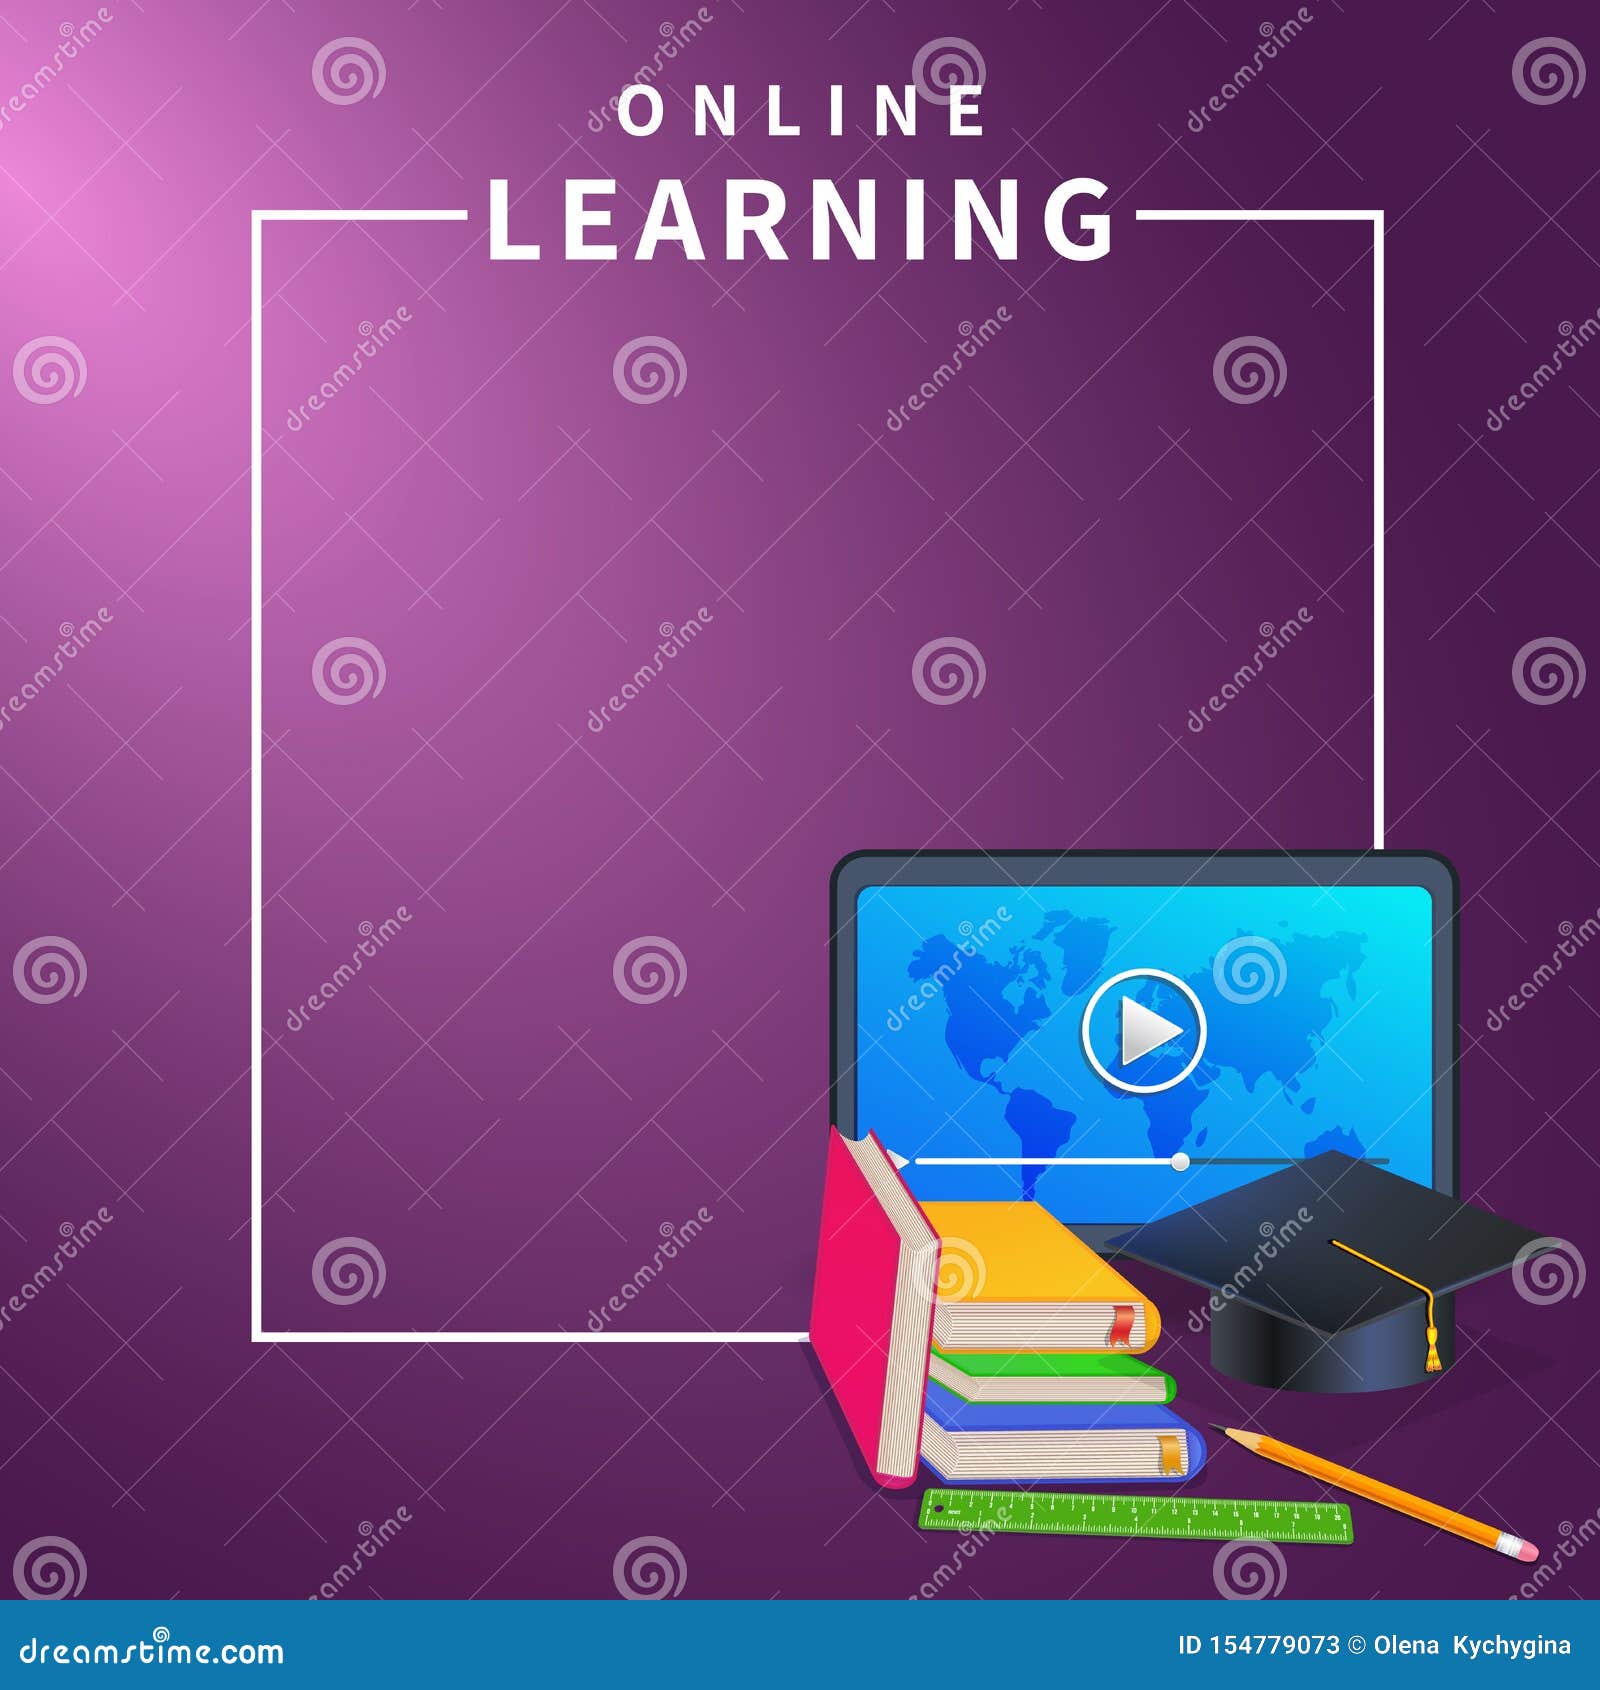 Giáo dục trực tuyến đang trở thành một xu hướng phổ biến trong thời đại hiện nay. Với banner giáo dục trực tuyến, bạn sẽ có thể tìm hiểu được các khóa học trực tuyến tiện lợi và hiệu quả nhất. Hãy đăng ký và khám phá những kiến thức mới ngay hôm nay!